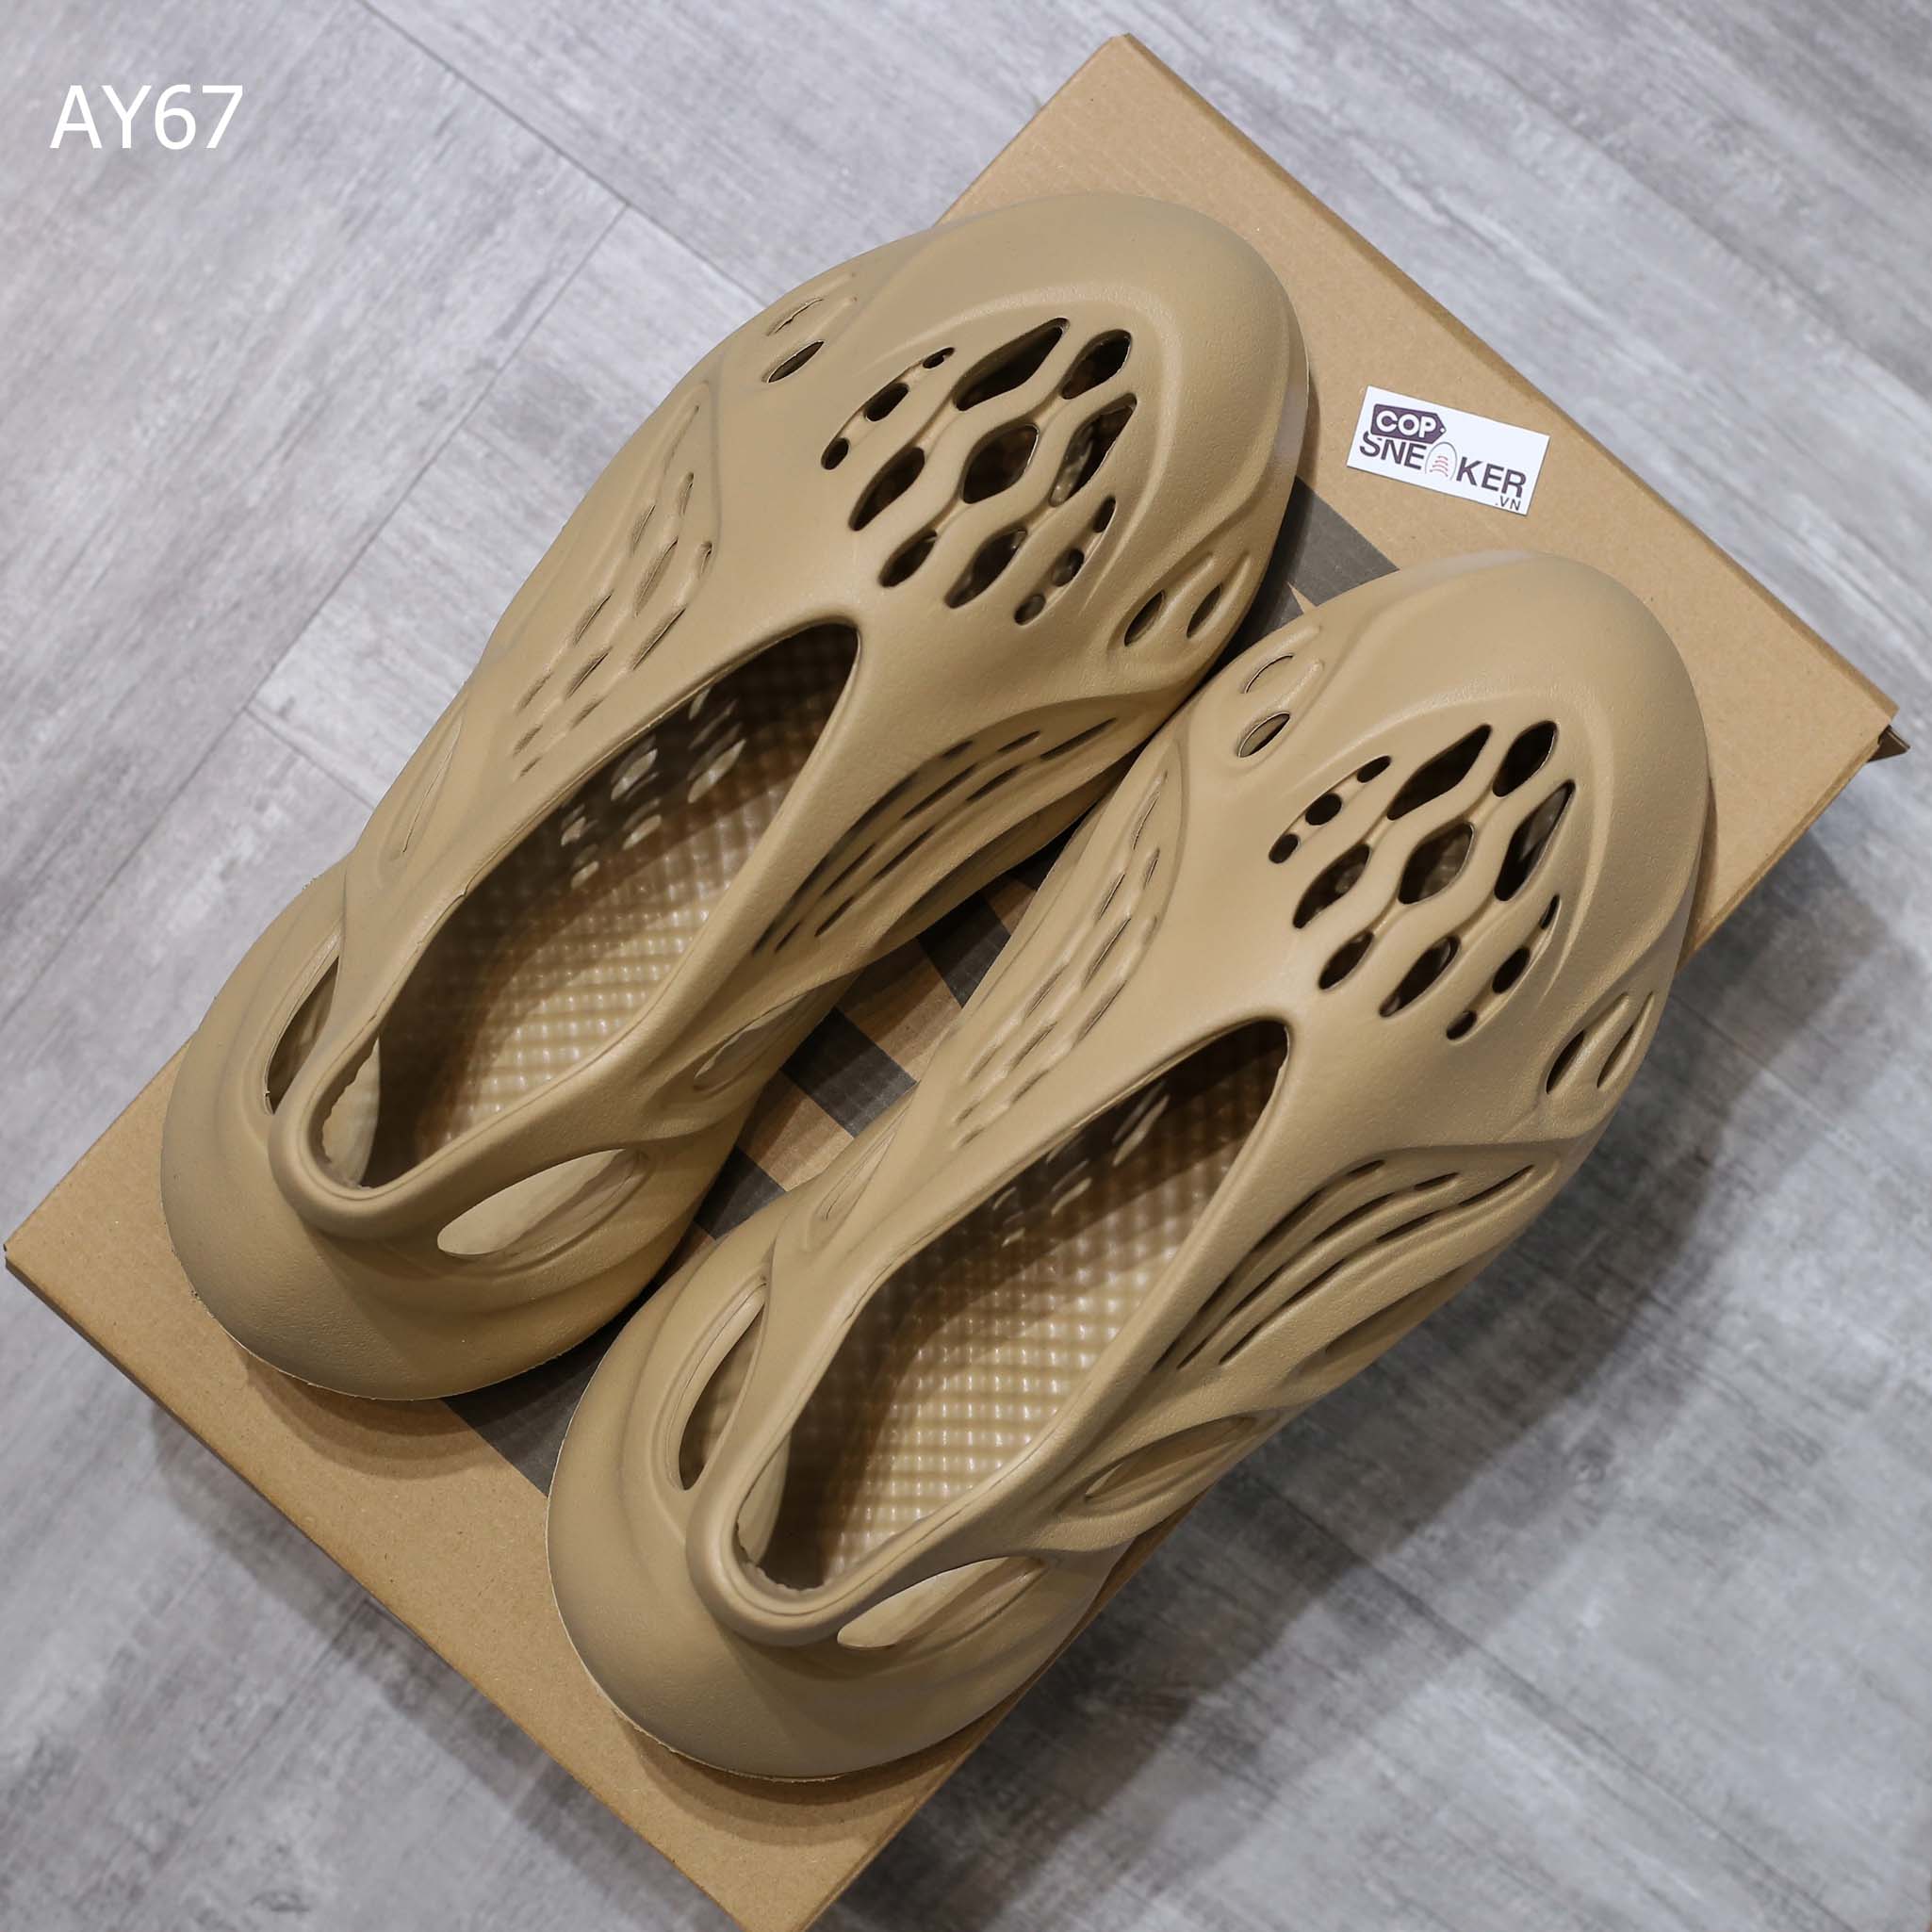 Giày Adidas Yeezy Foam Runner màu nâu ‘Ochre’ rep 1:1